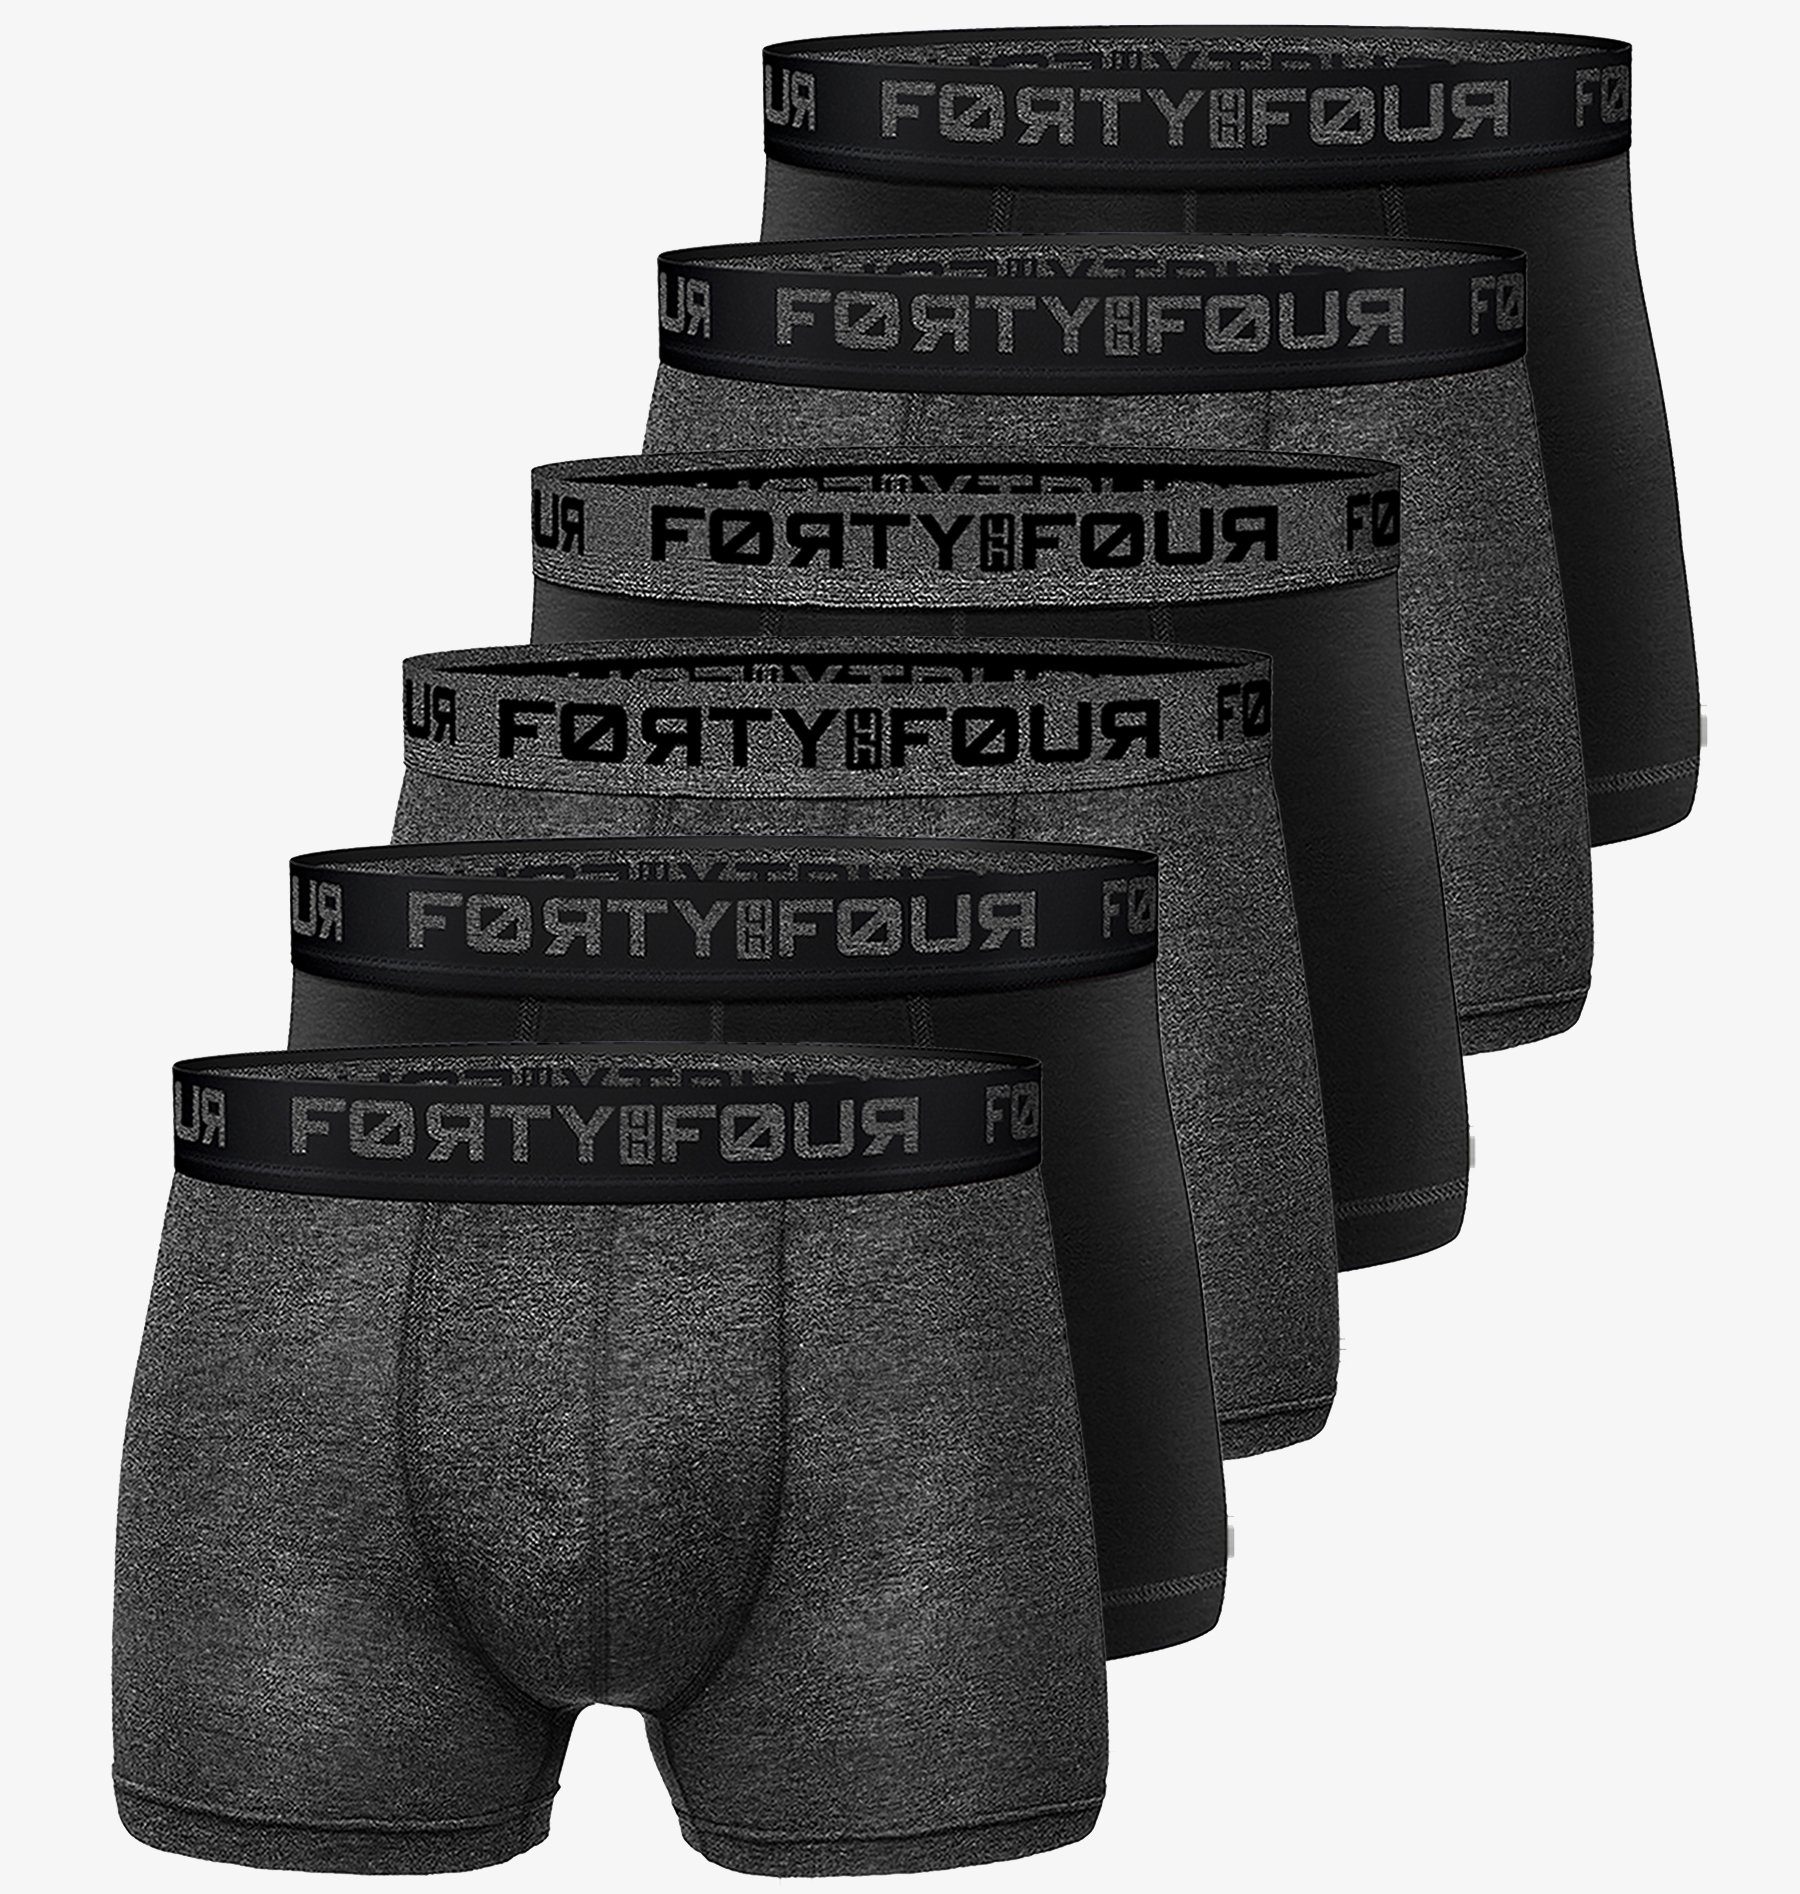 FortyFour Boxershorts Herren Männer Unterhosen Baumwolle Premium Qualität perfekte Passform (Vorteilspack, 6er Pack) S - 7XL 706e-schwarz/anthrazit